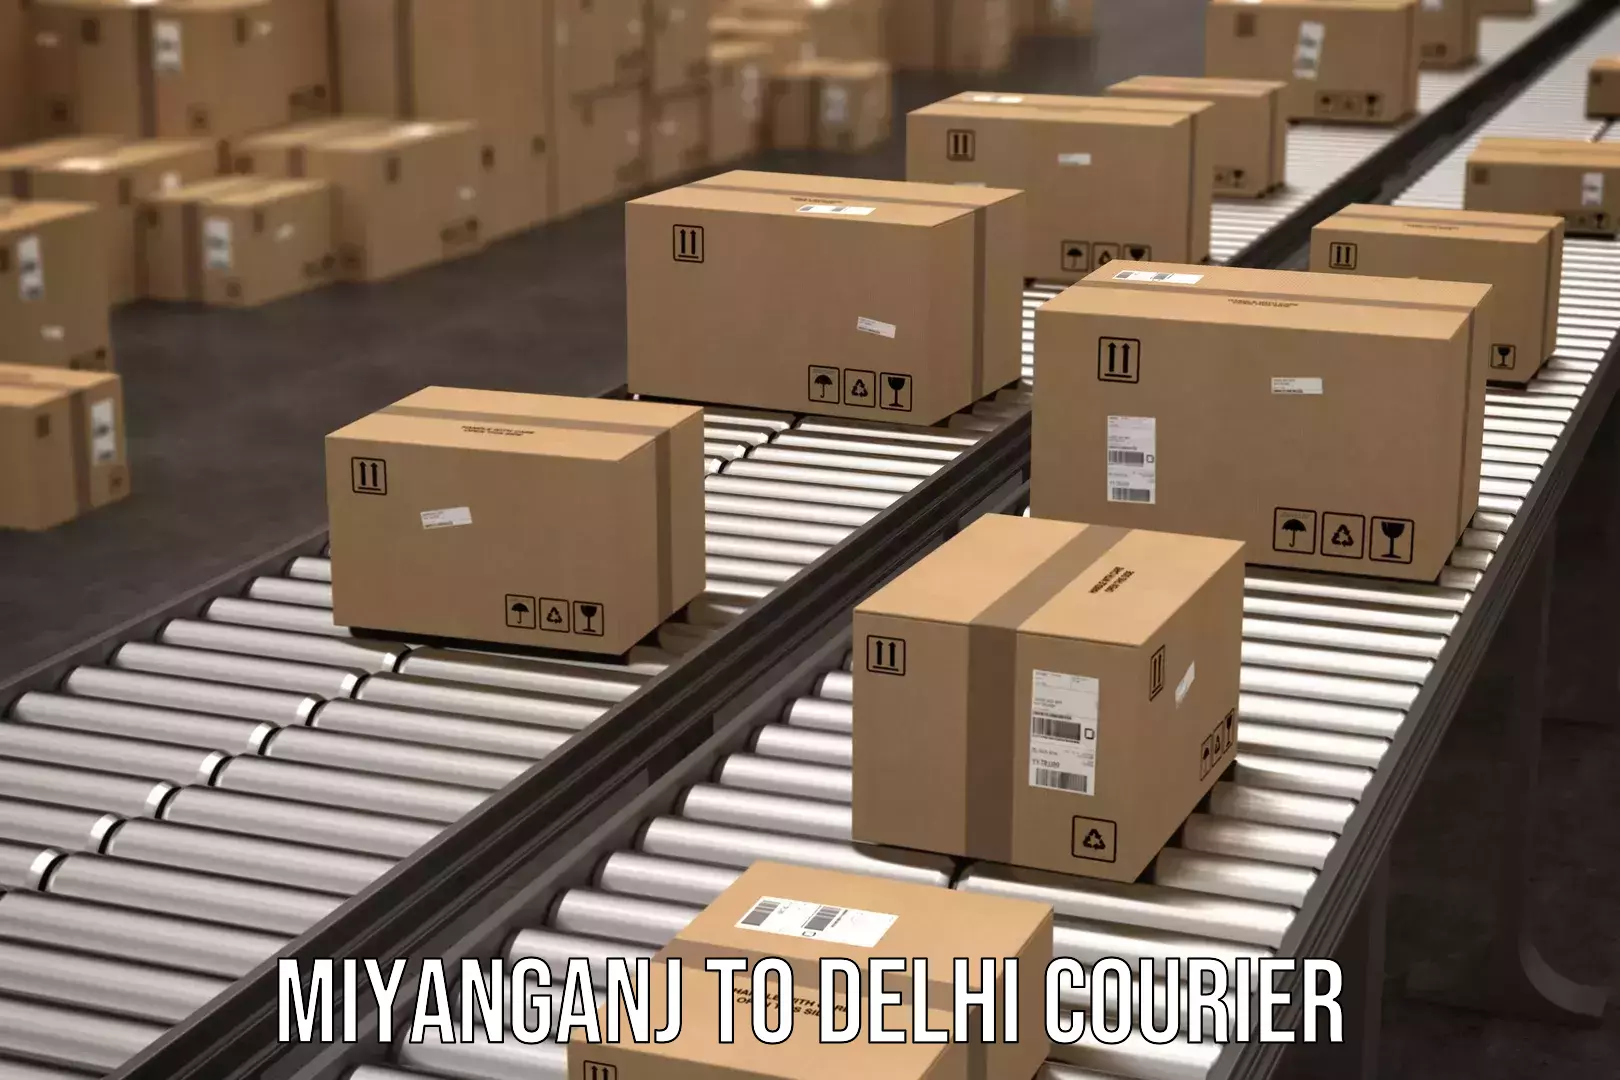 Bulk shipping discounts Miyanganj to Delhi